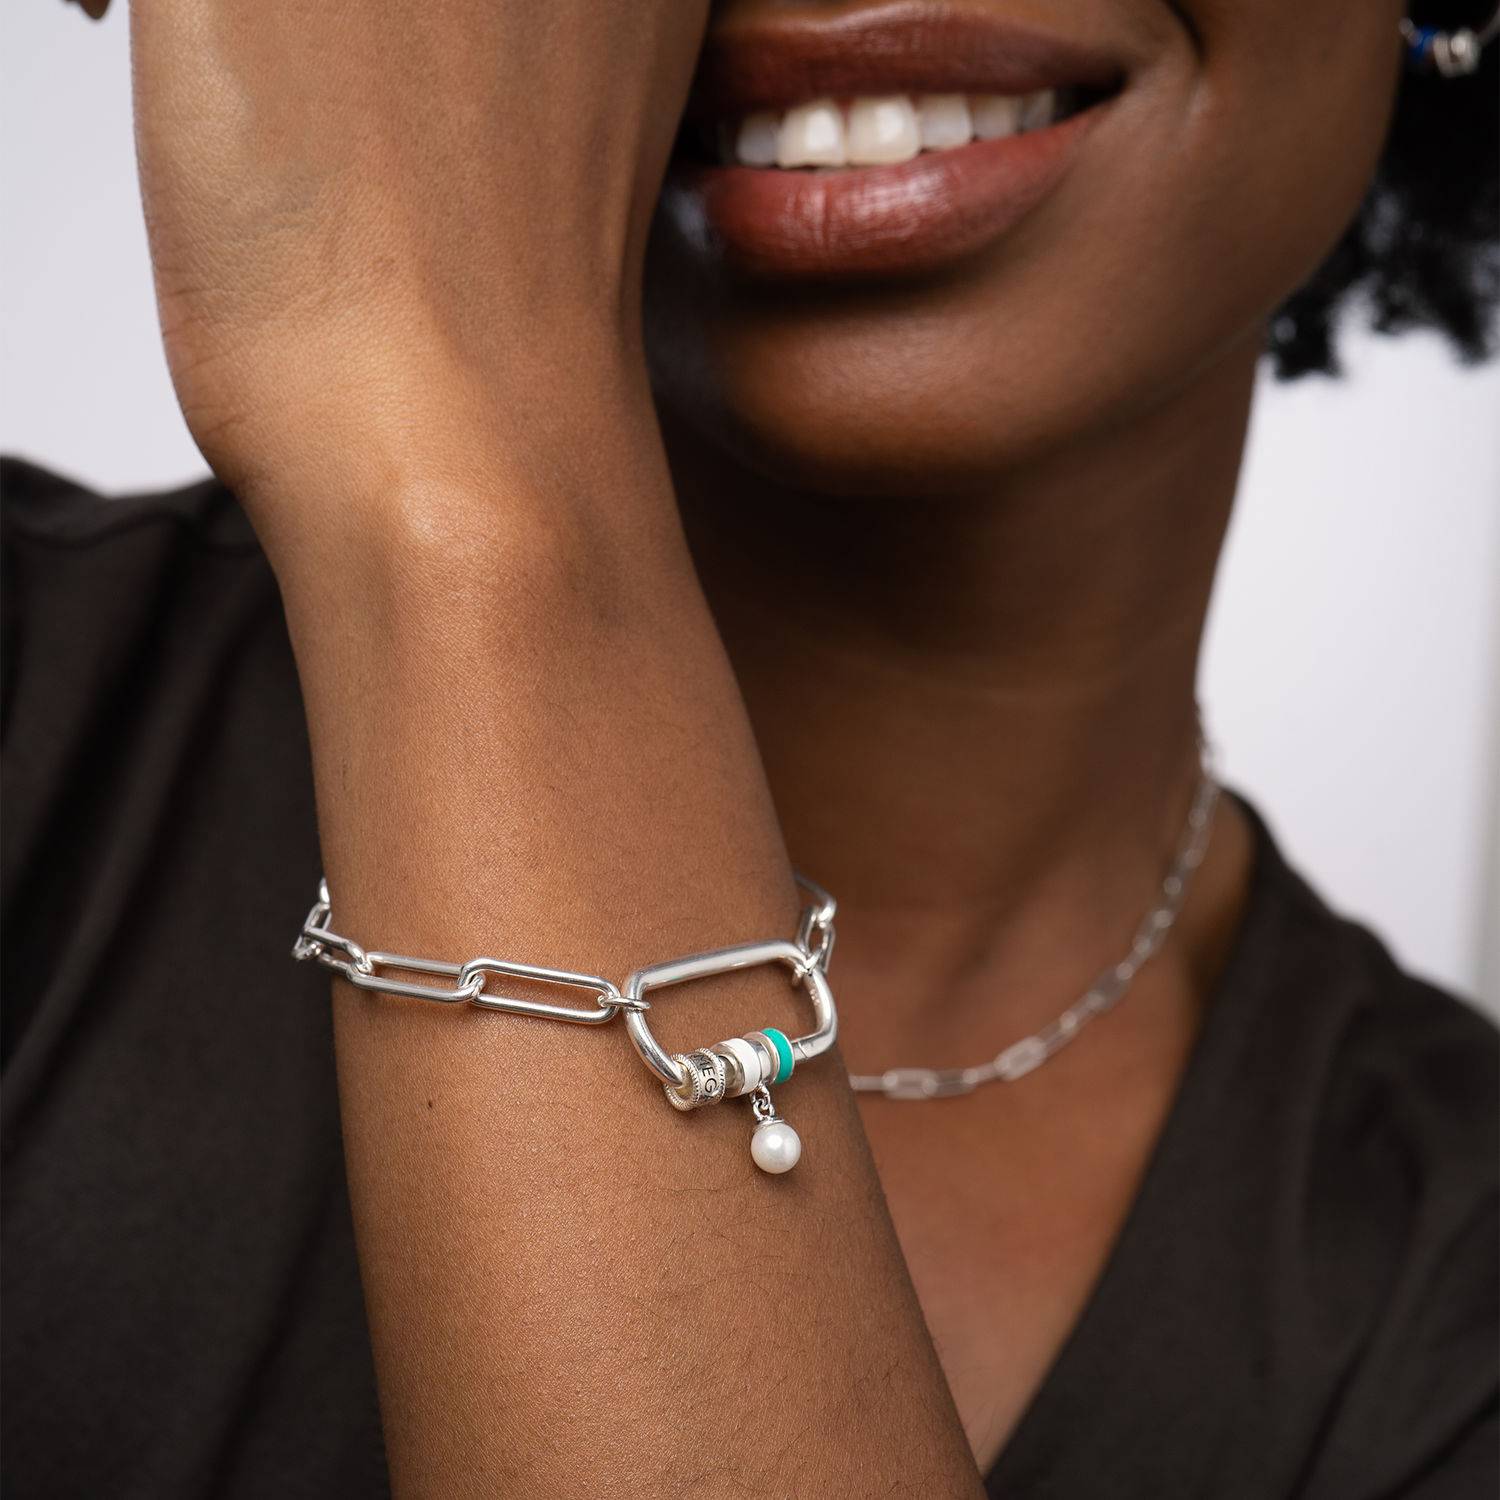 Linda armband met ovale sluiting en diamant in sterling zilver-2 Productfoto